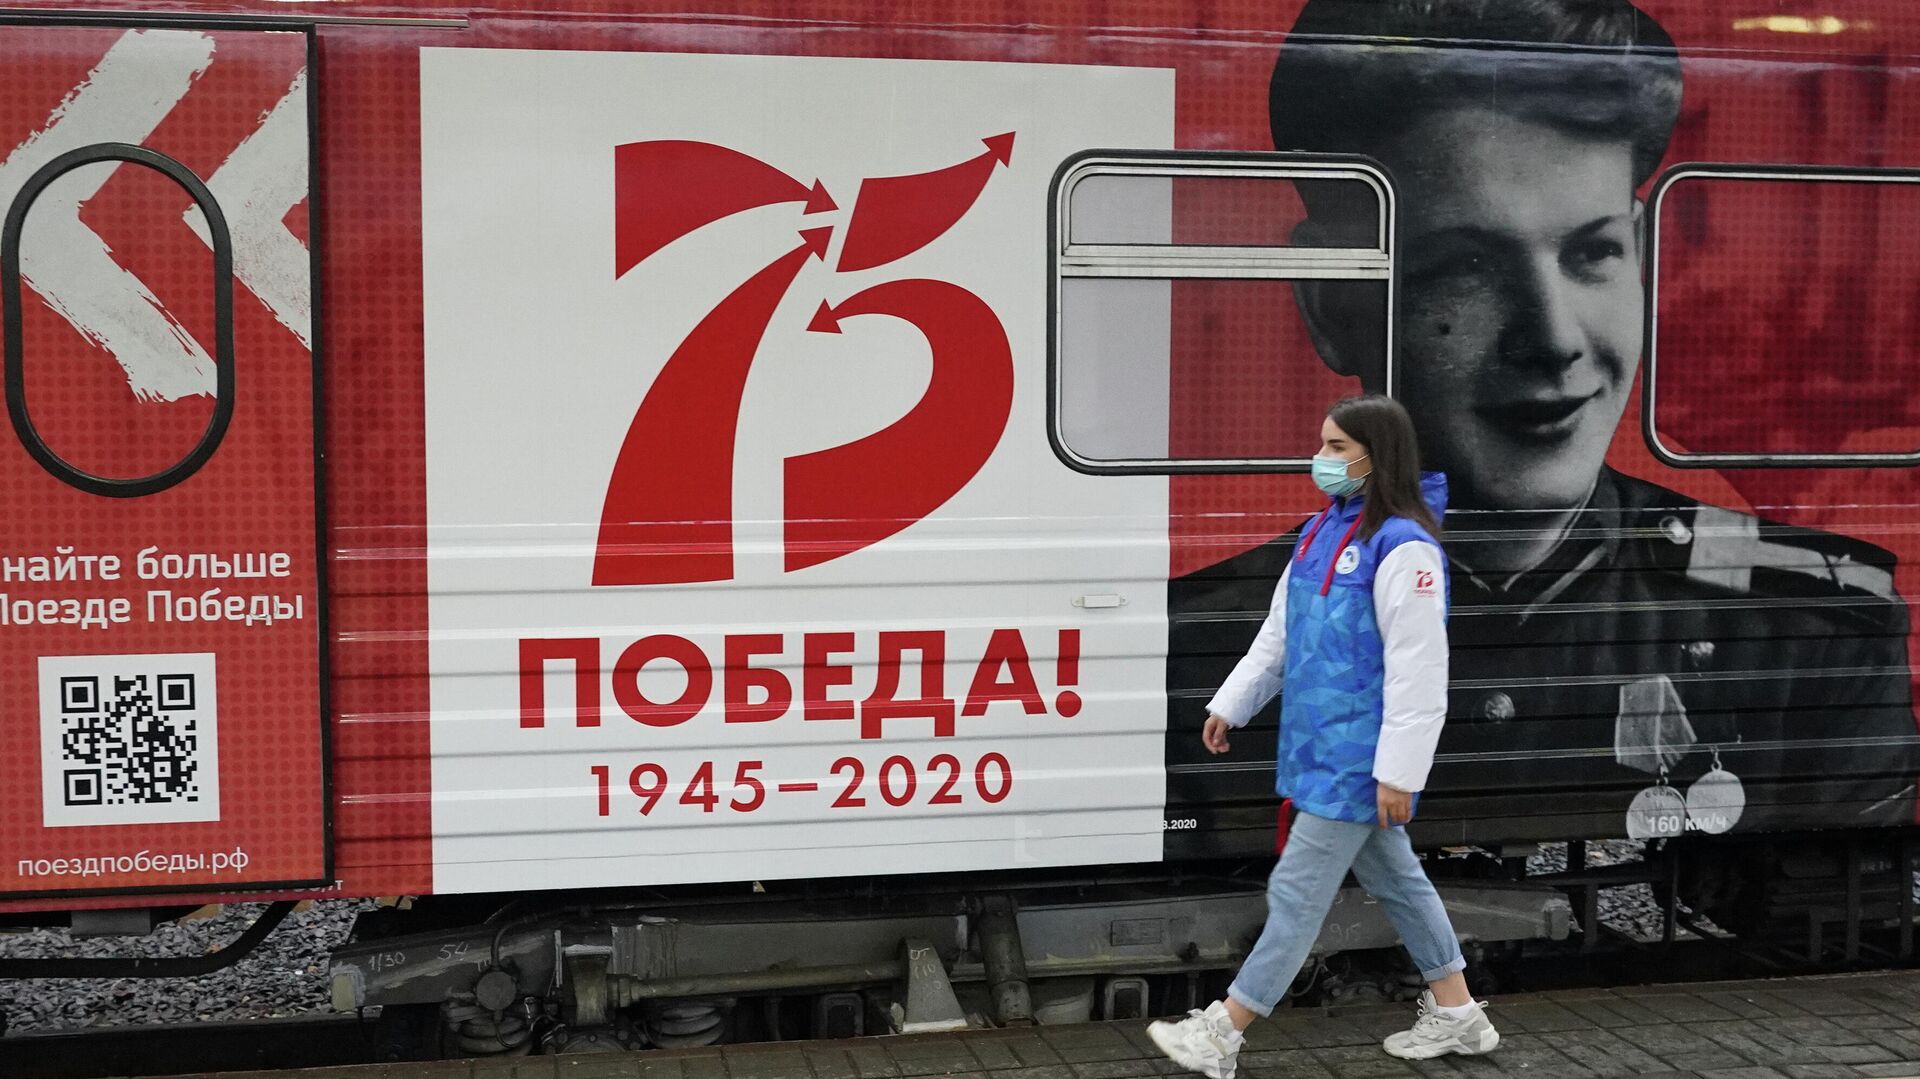 Тематический поезд «Сила в правде» побывает почти в 70 российских регионах